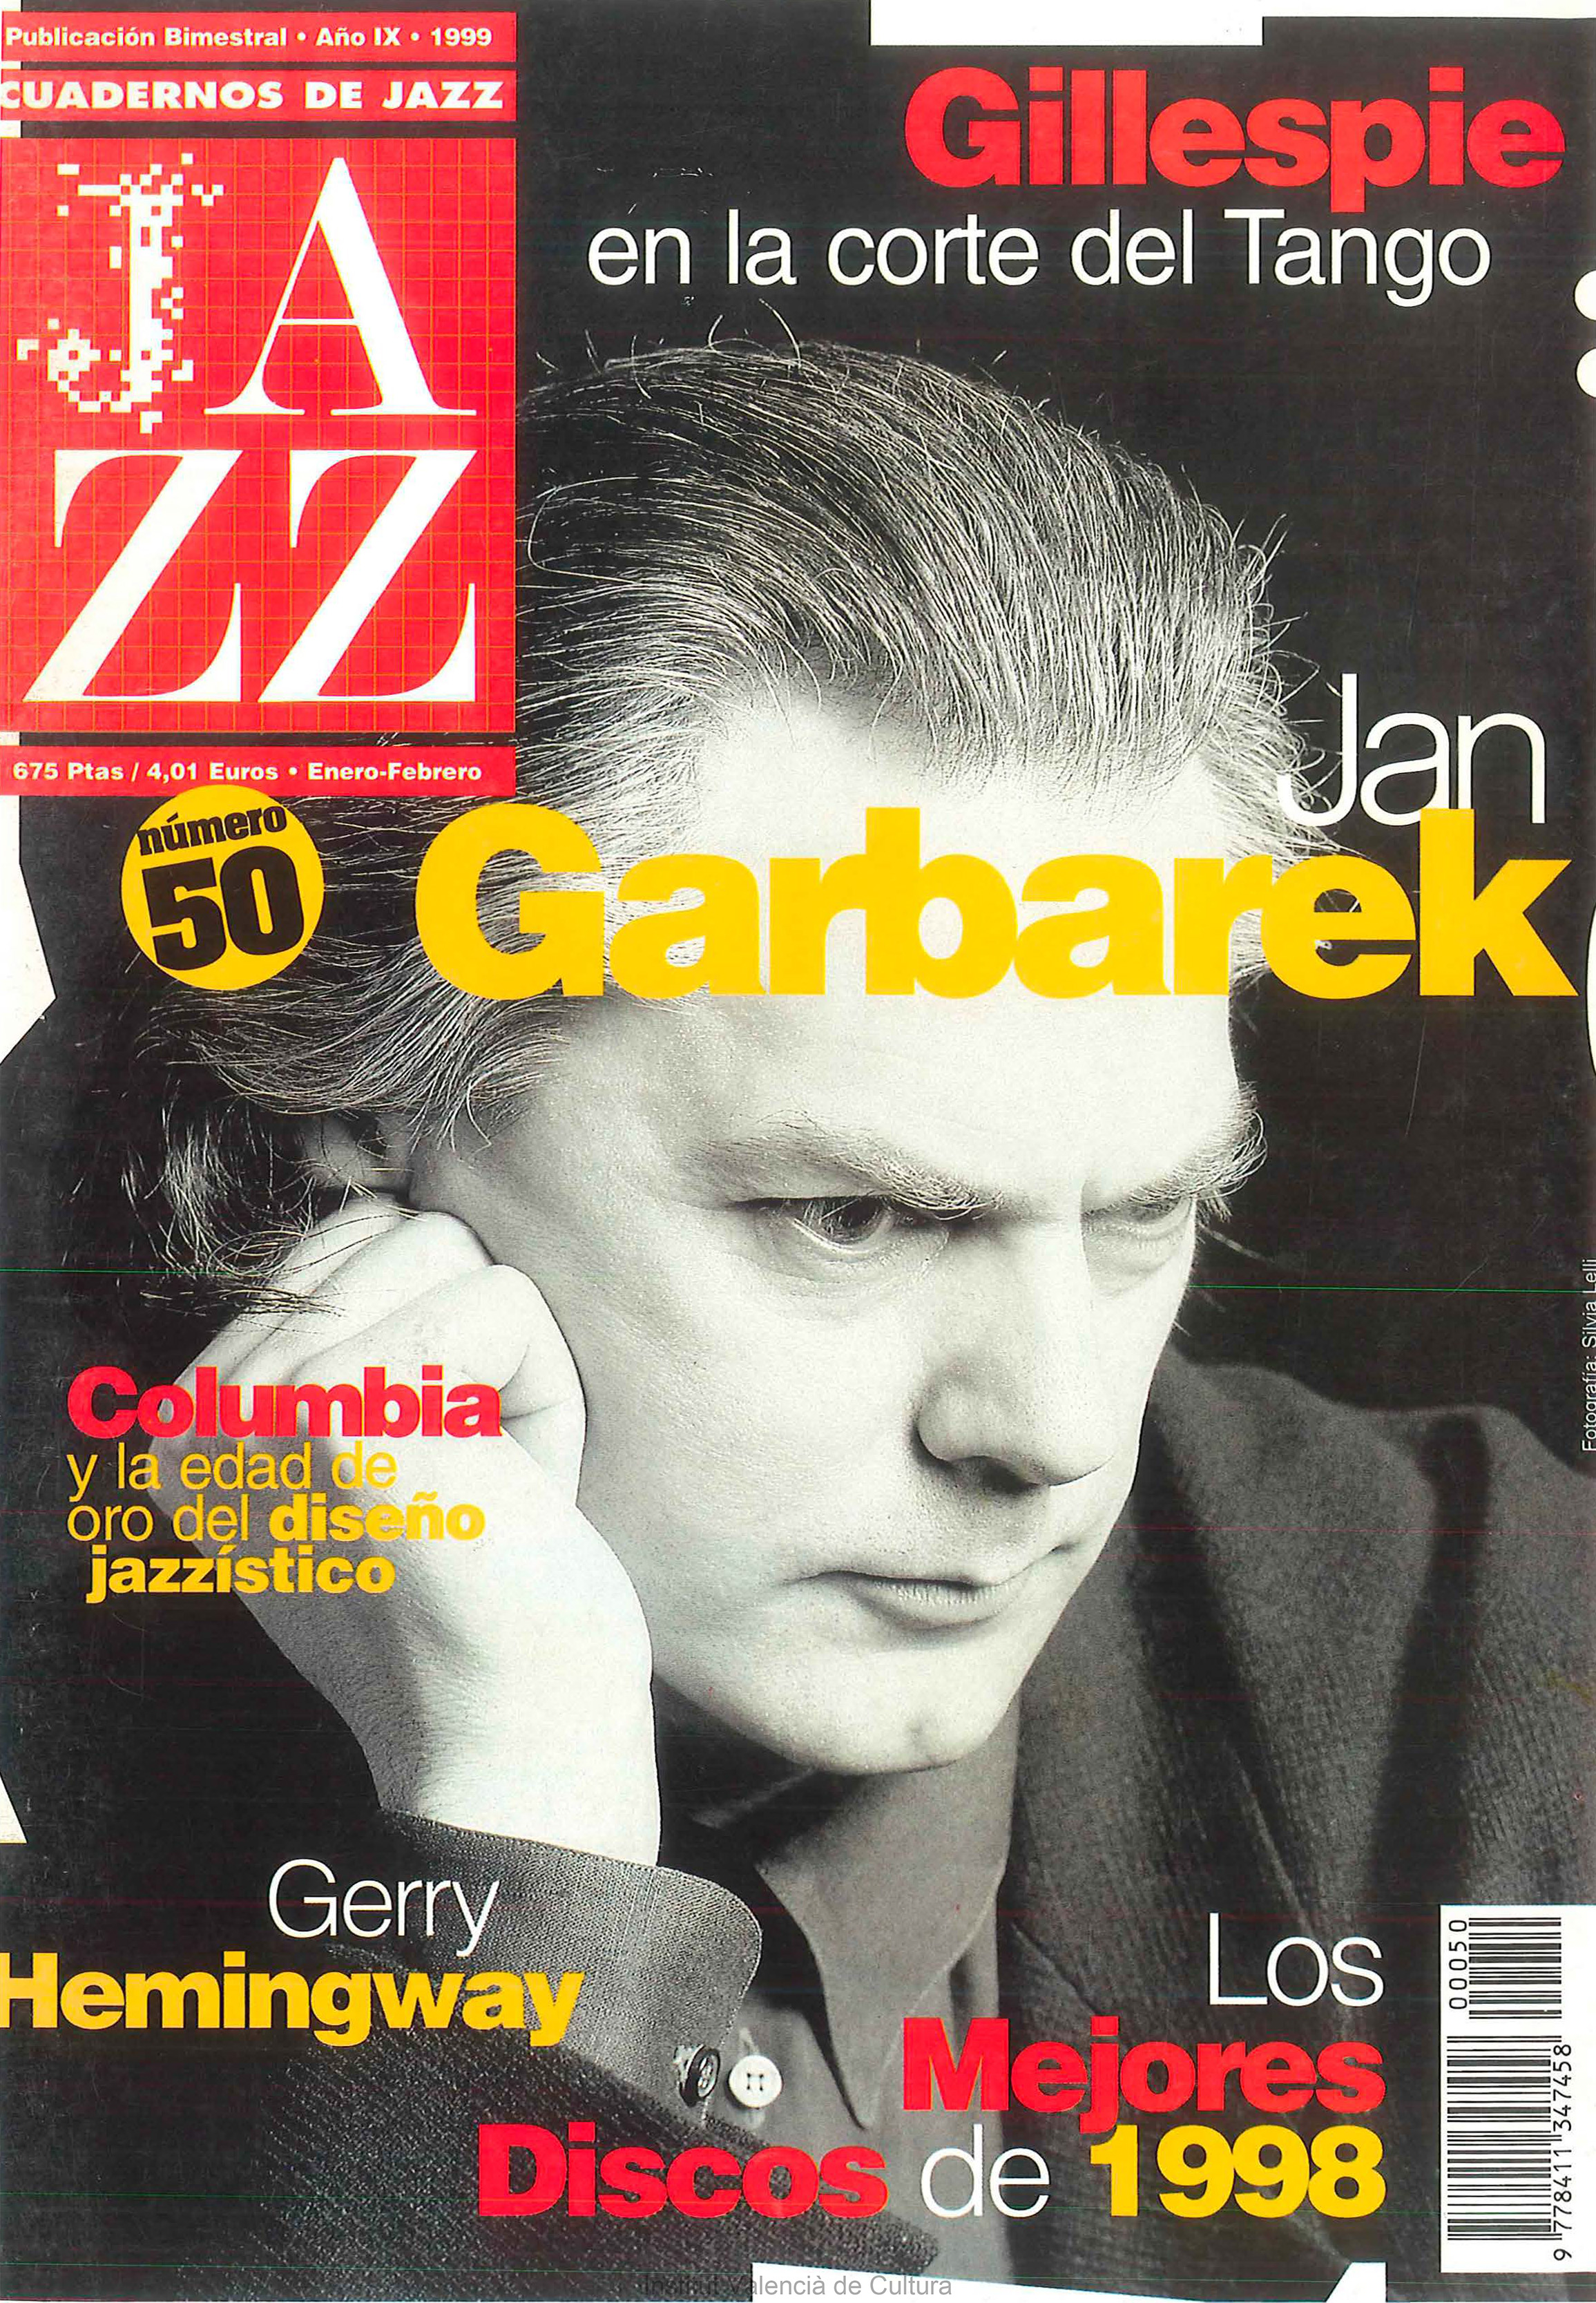 Cubierta del número 50 de la revista Cuadernos de Jazz